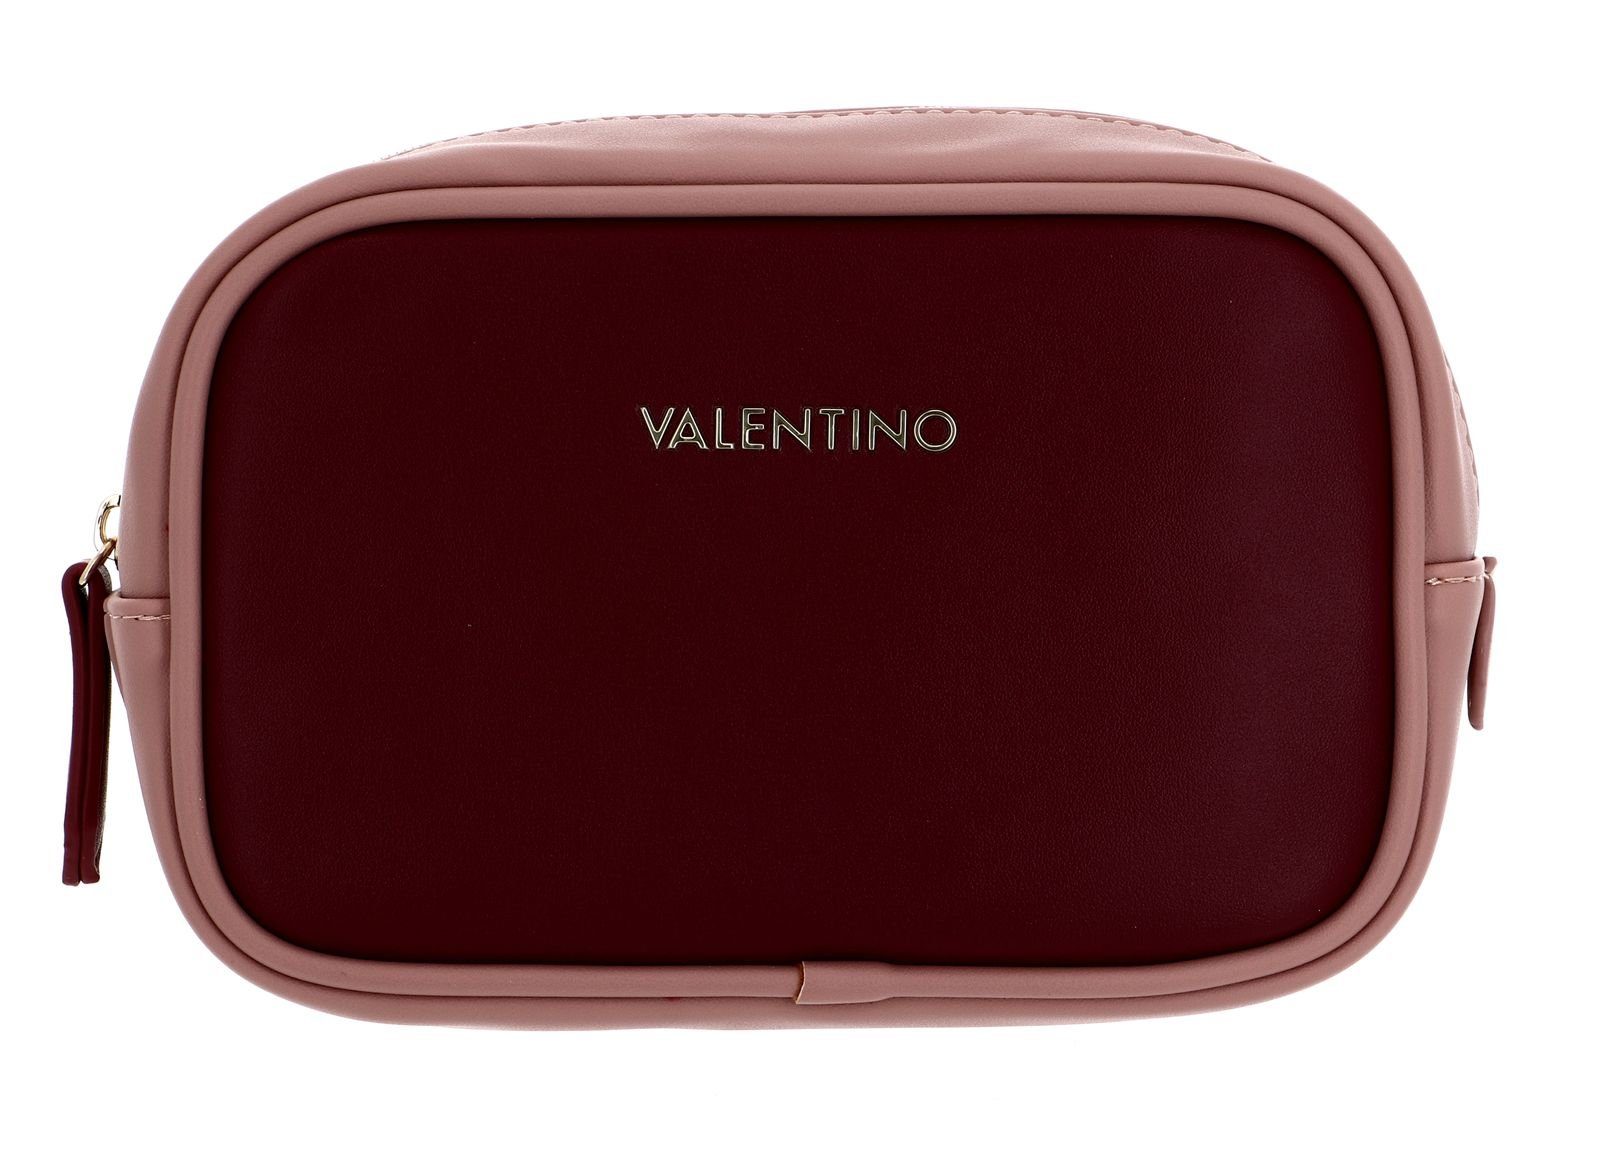 / Rossio VALENTINO Multicolor BAGS Kosmetiktasche Rosso